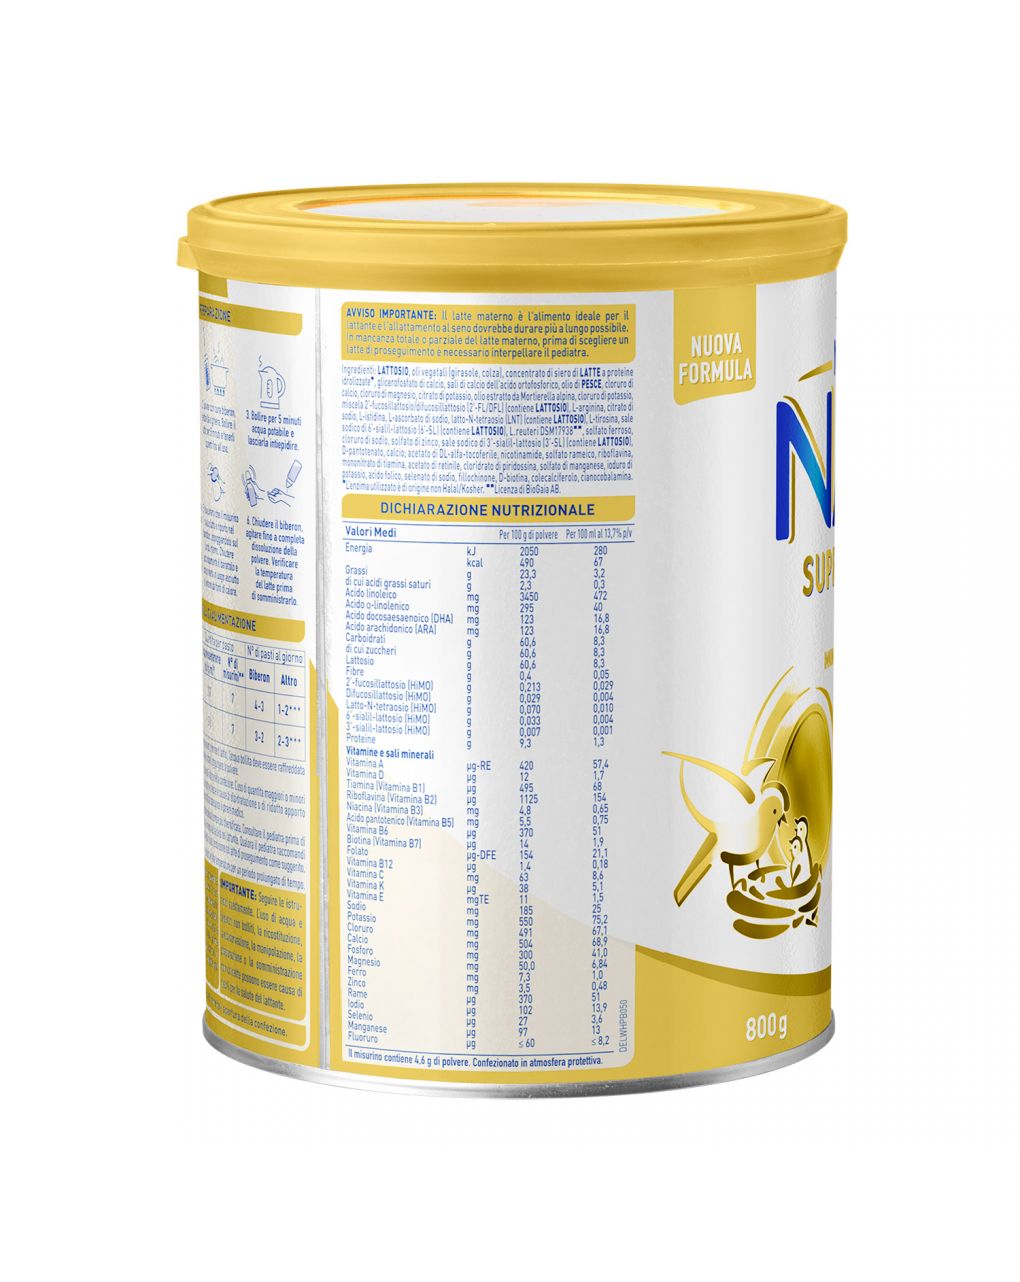 Nestlé nan supreme pro 2, da 6 mesi. latte di proseguimento in polvere, latta da 800g - Nestlé